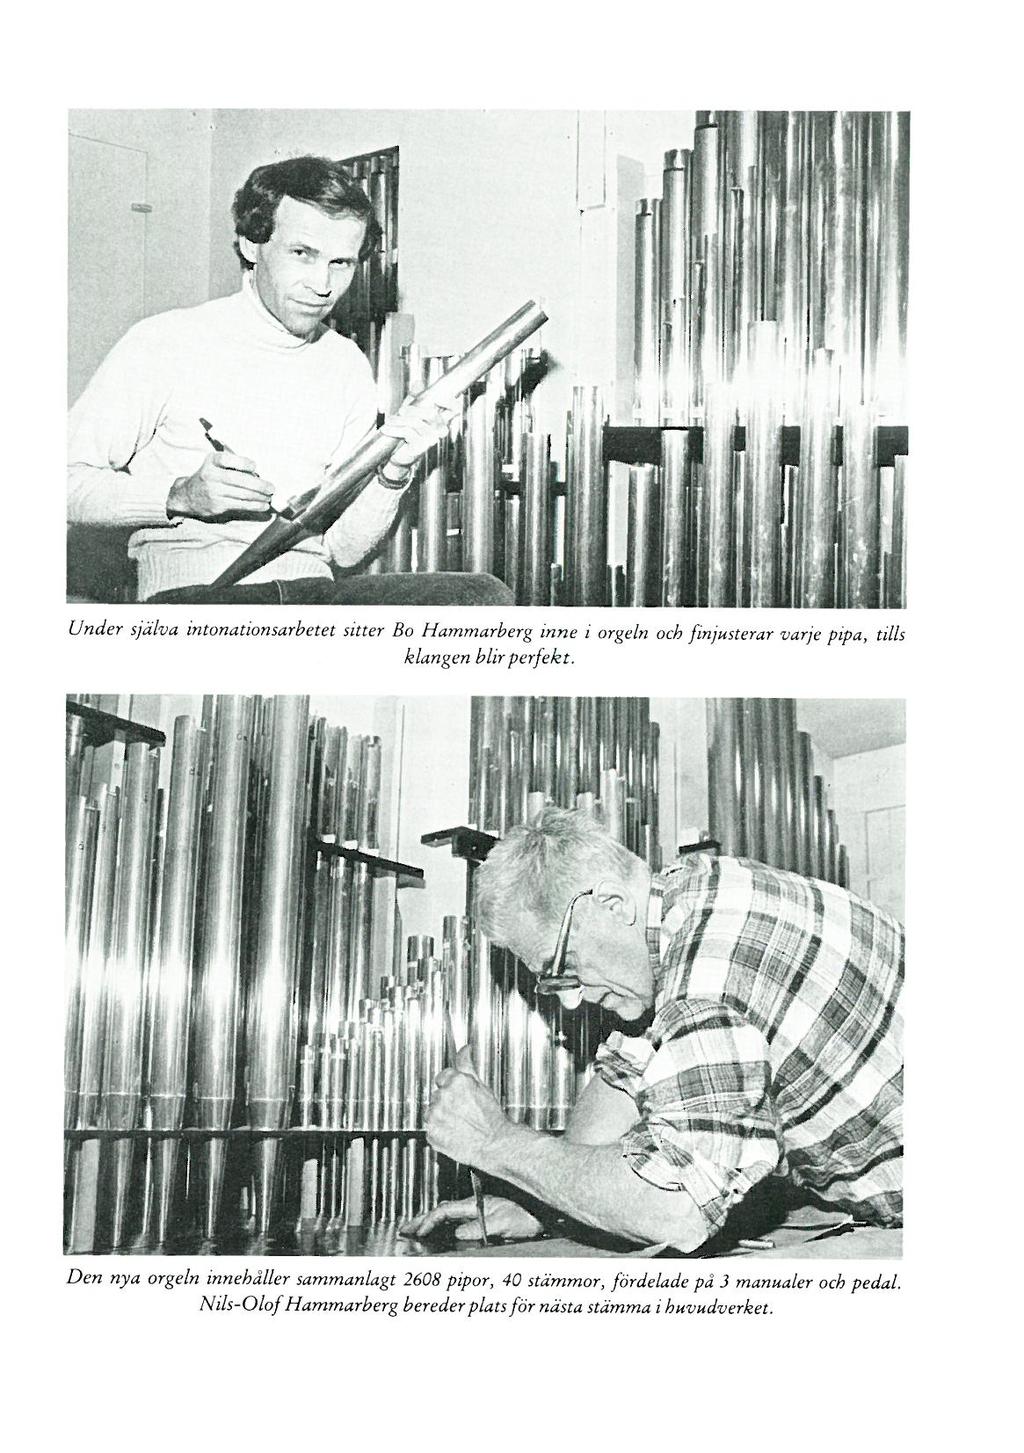 Under själva intonationsarbetet sitter Bo Hammarberg inne i orgeln och finjusterar varje pipa, tills klangen hlir perfekt.